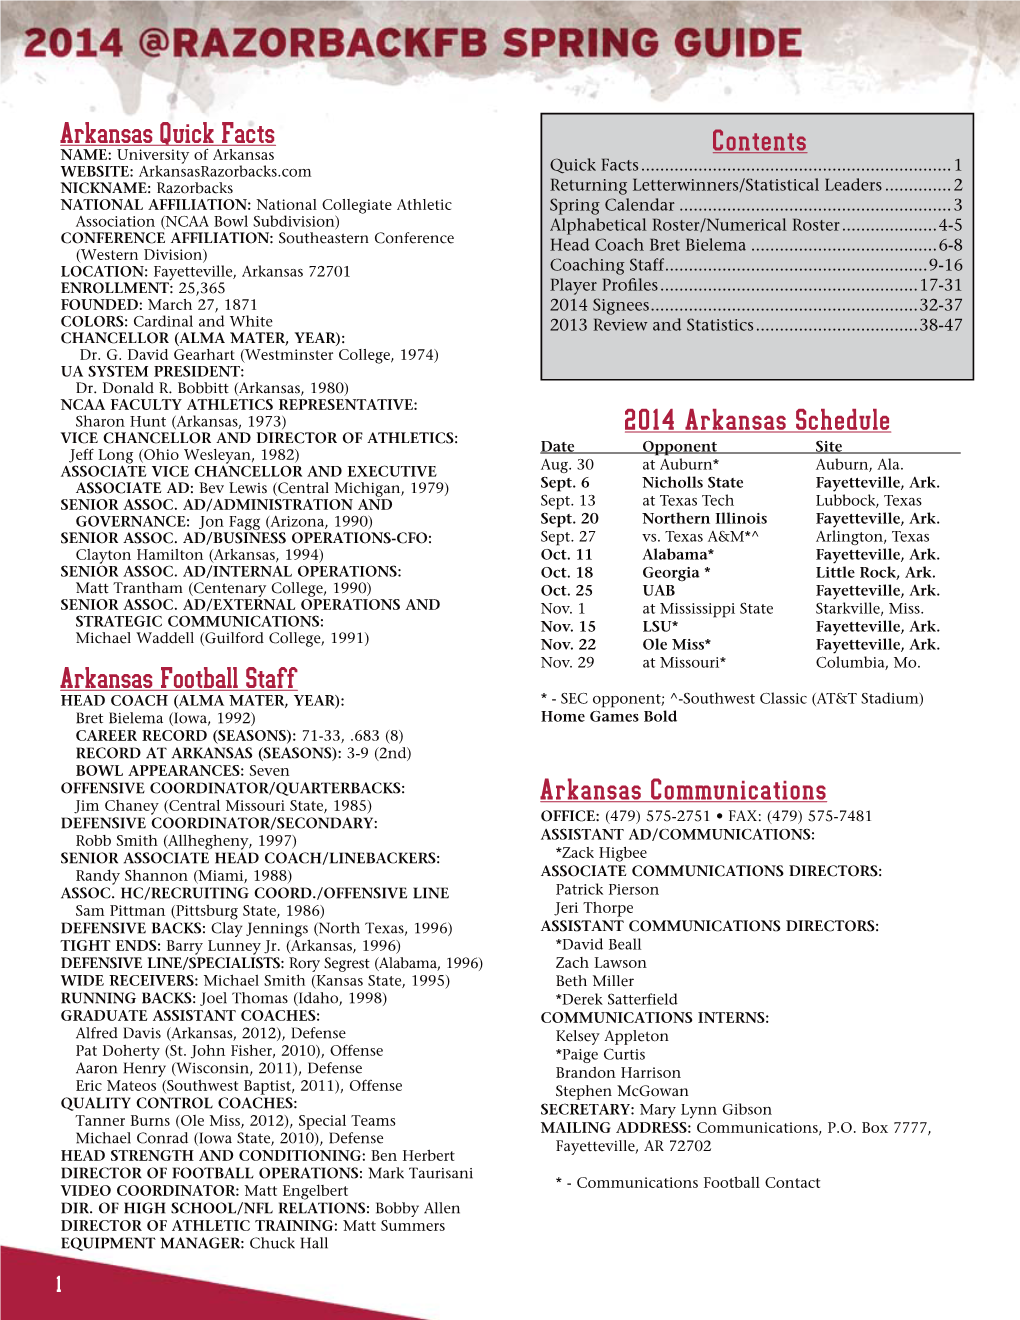 2014 Arkansas Spring Football Media Guide